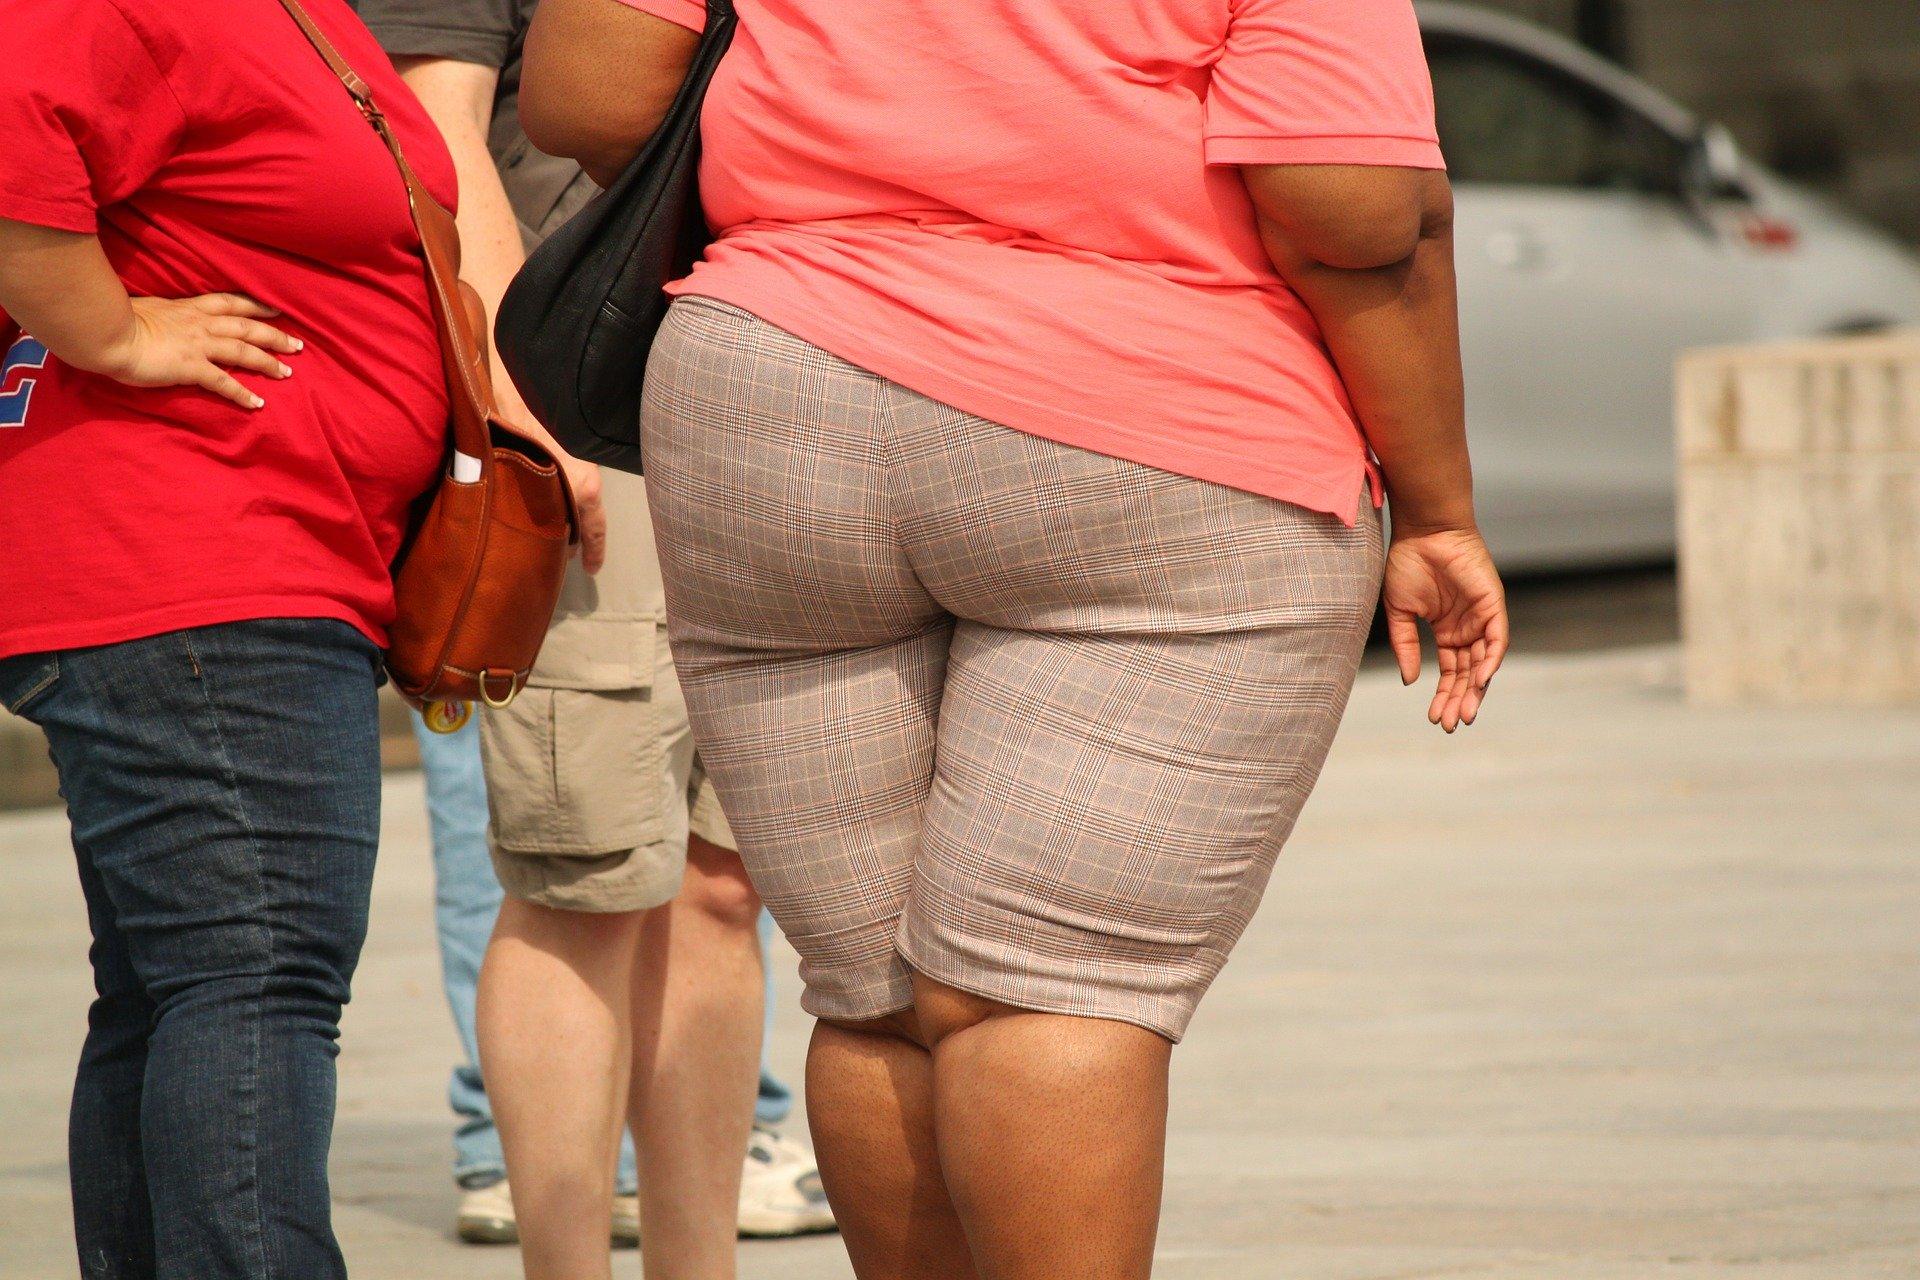 La obesidad se ha convertido en una pandemia mundial que produce 3 millones de muertes cada año